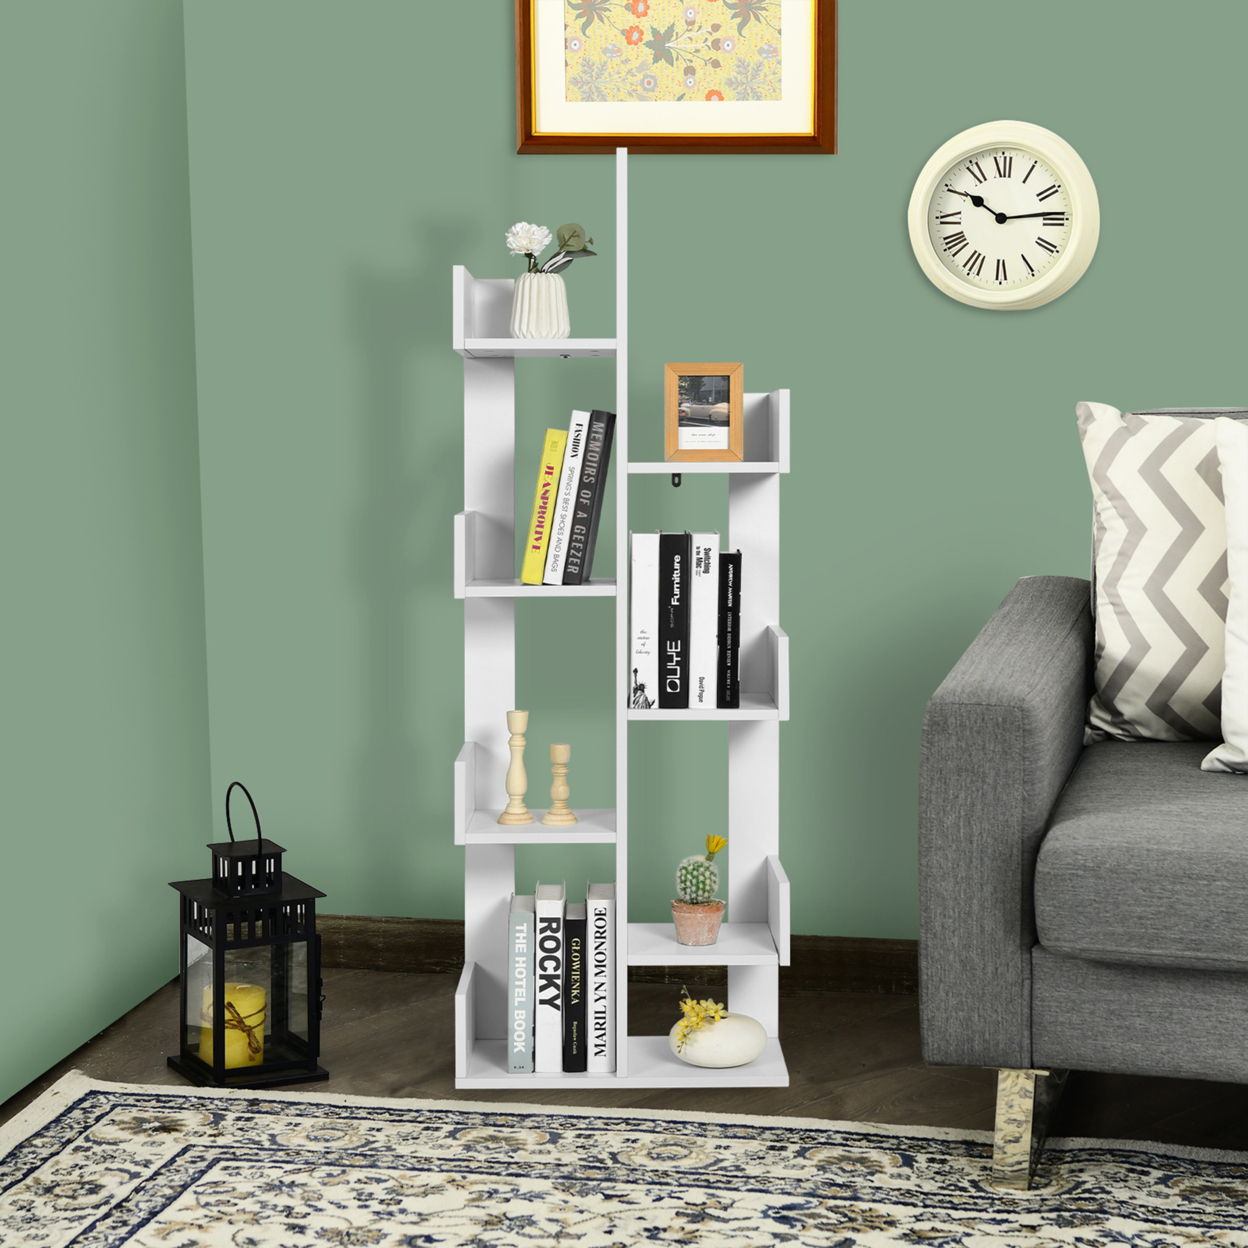 6 Tier S-Shaped Bookshelf Storage Display Bookcase Decor Z-Shelf - Coffee